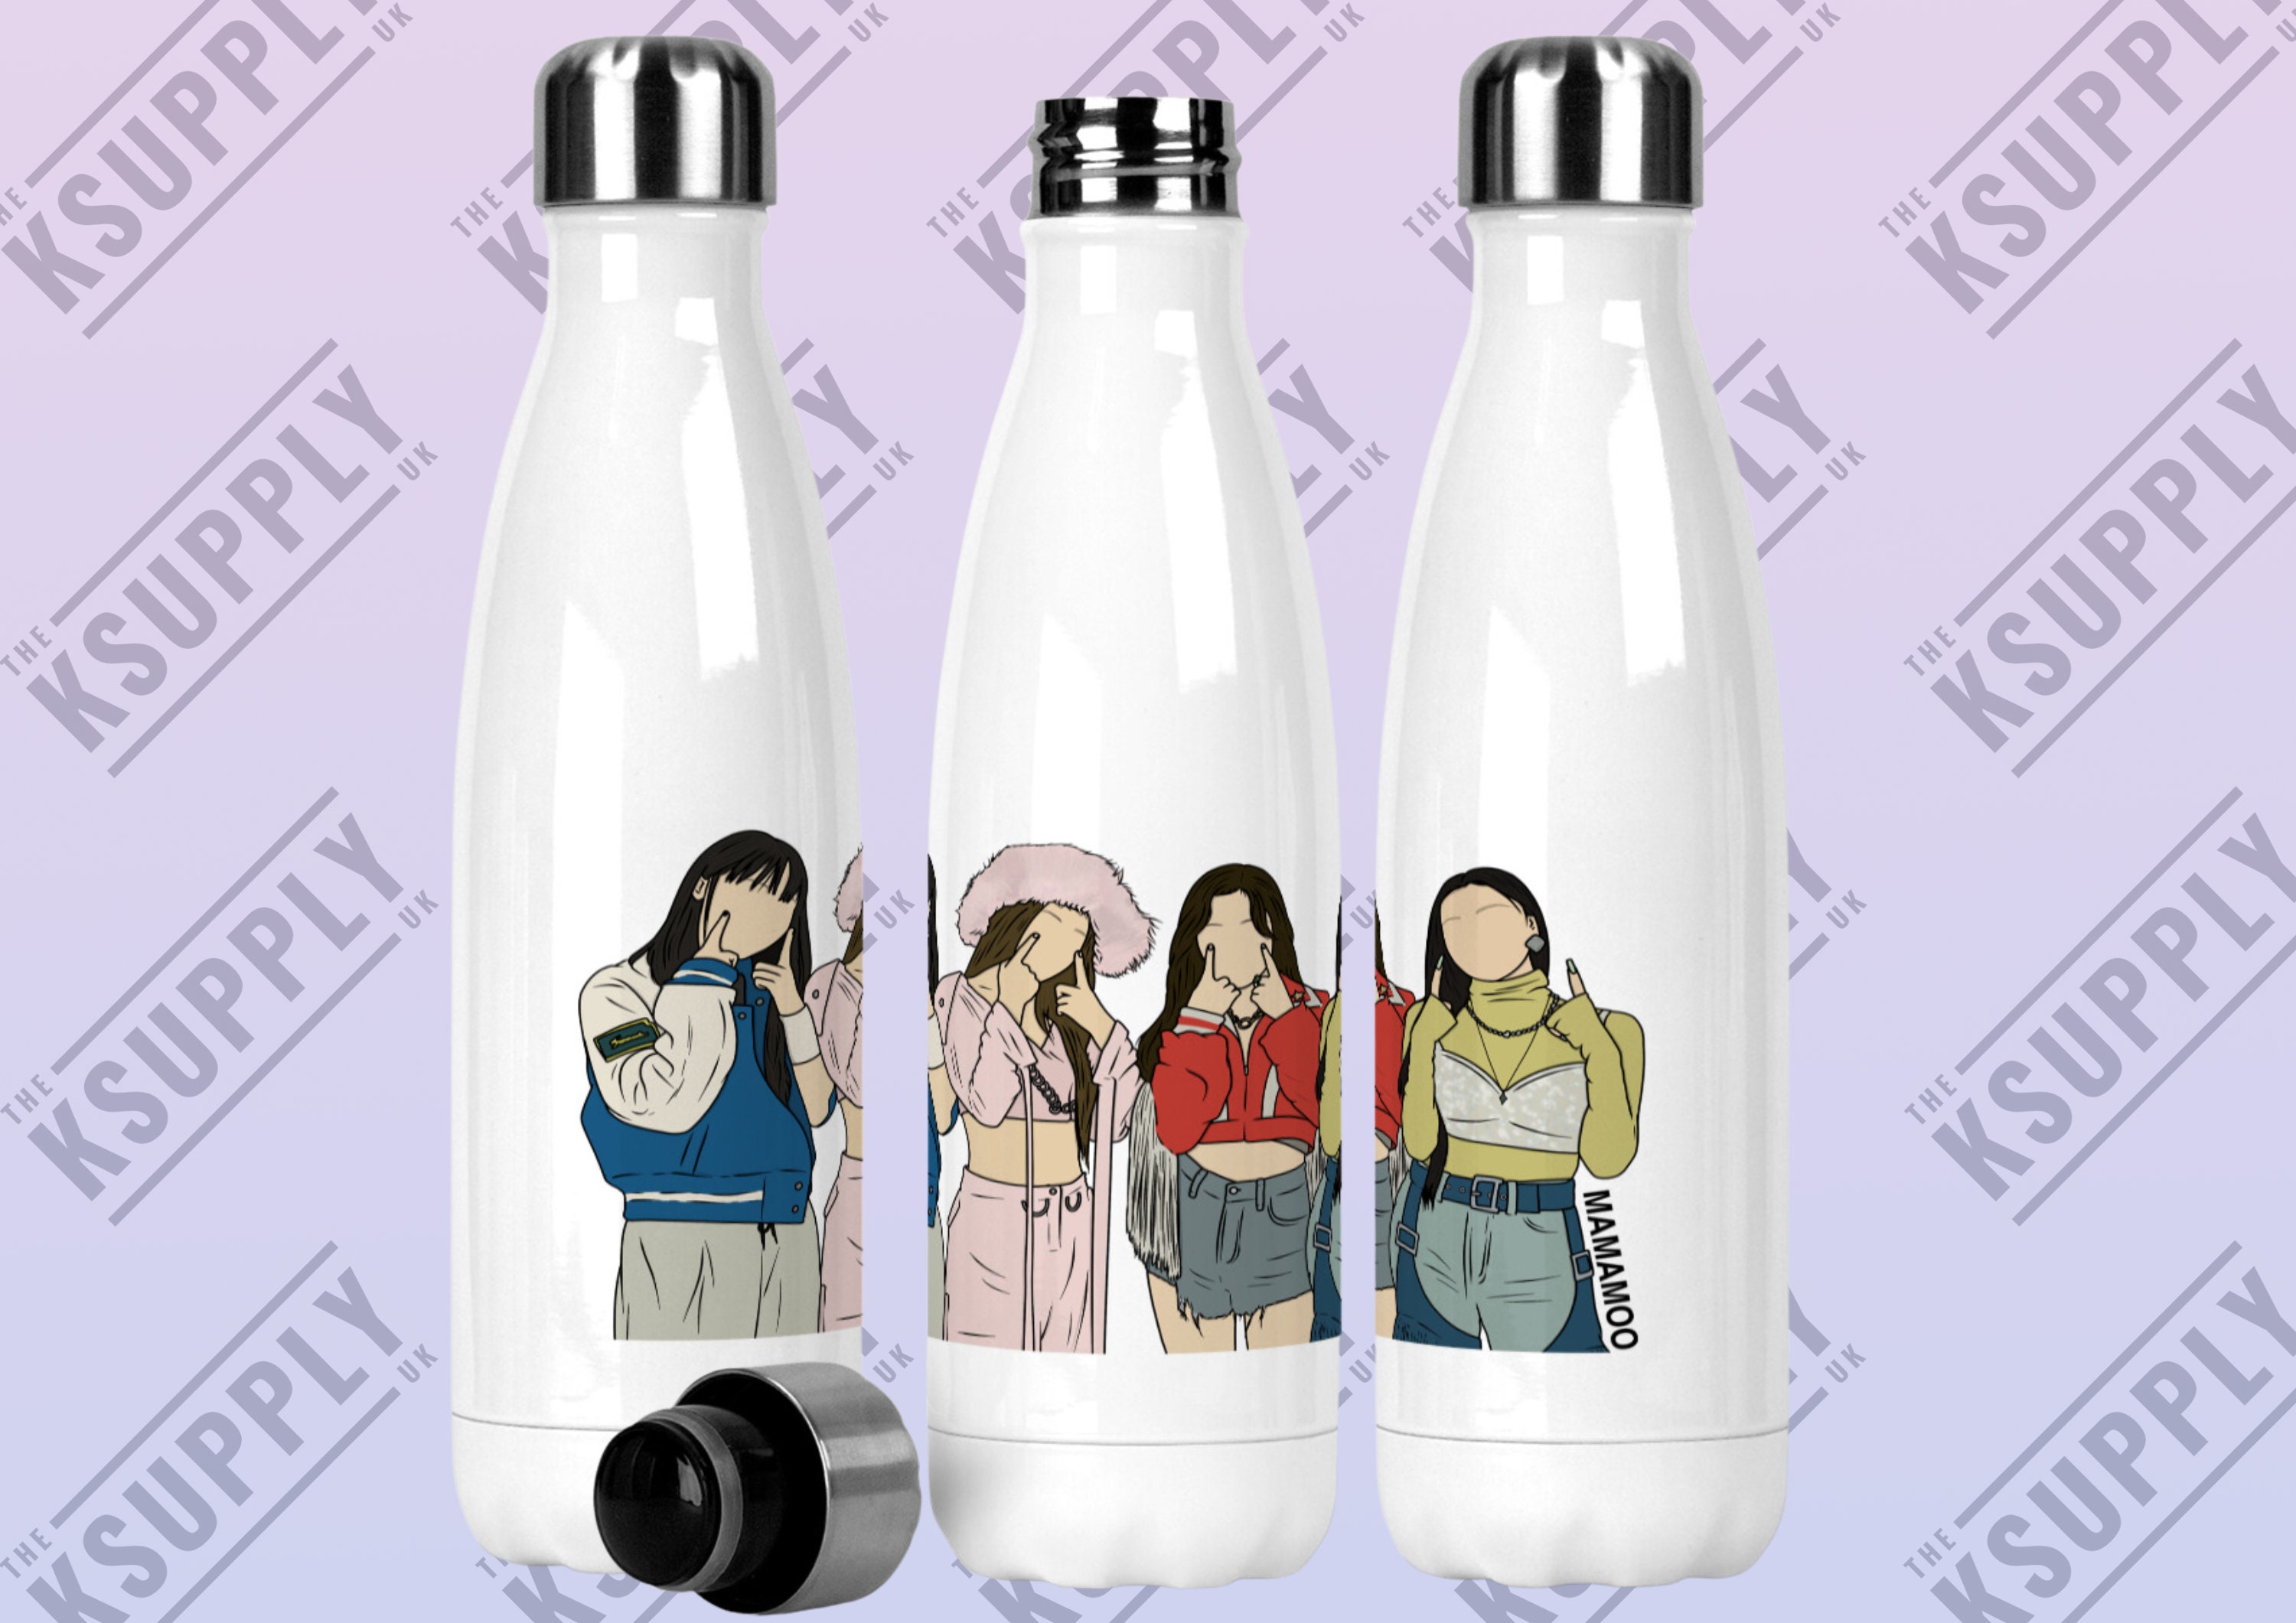 STRAY KIDS Kpop Stainless Steel Water Bottle, Kpop Merch, Kpop Gift Ideas,  Kpop Fan, Metal Bottle, SKZ Kpop, Kpop Bottle, Gift Ideas 